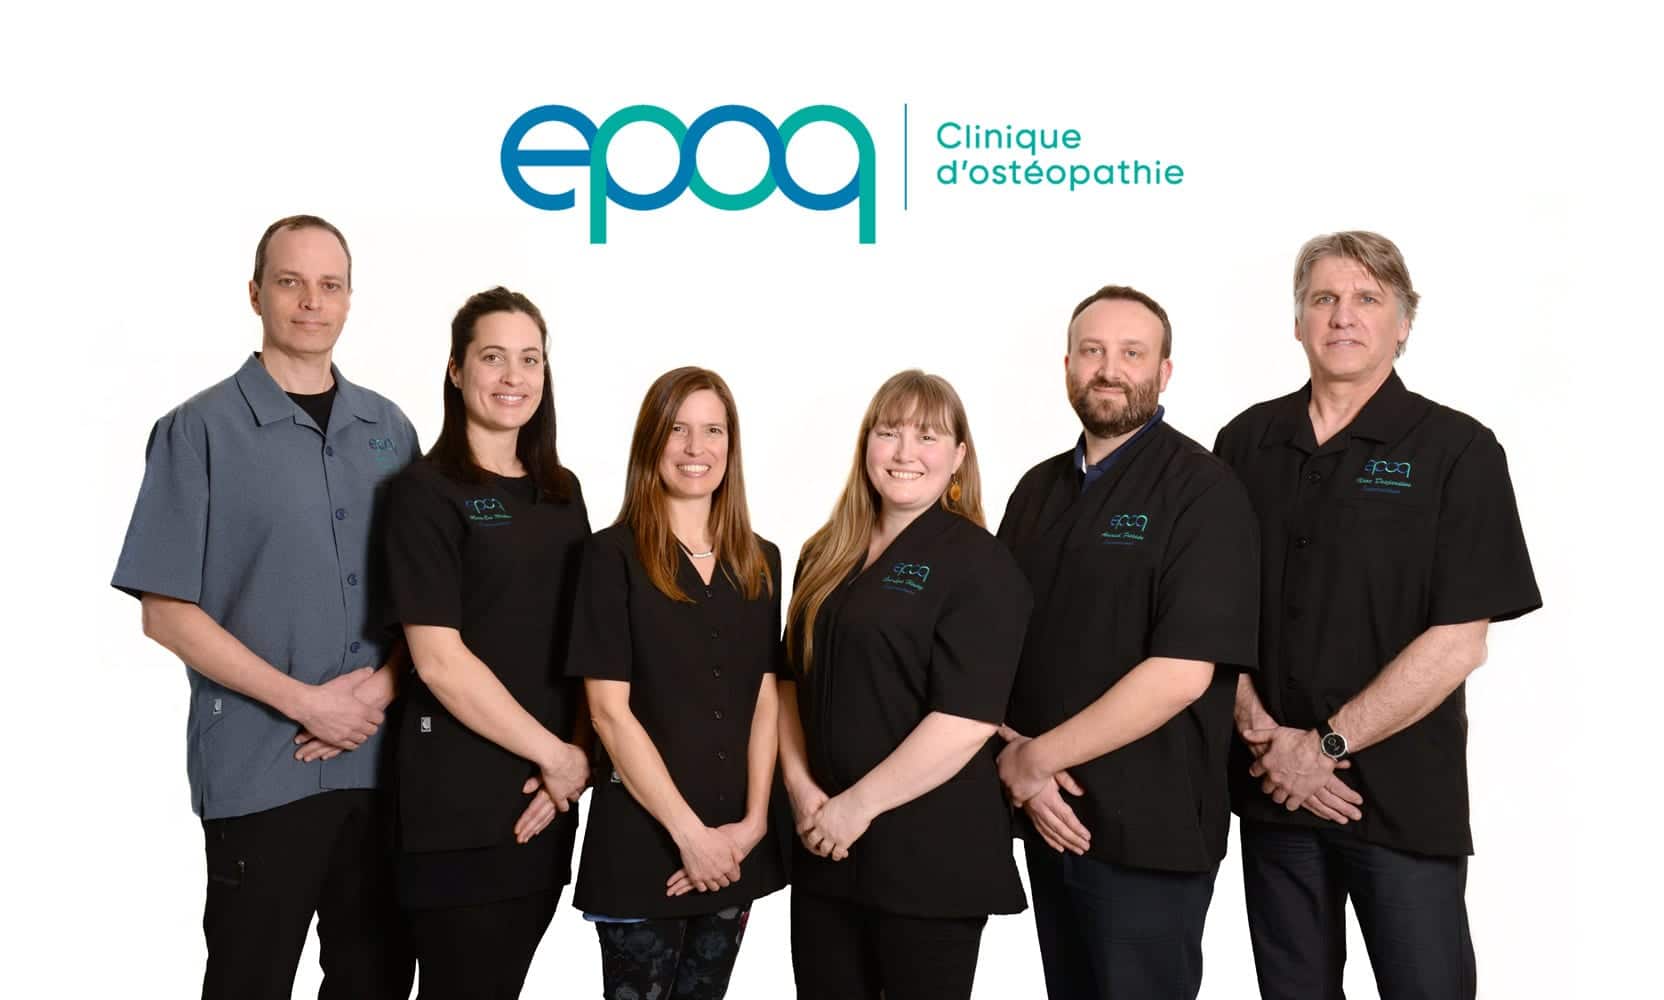 L'équipe de la clinique d'ostéopathie